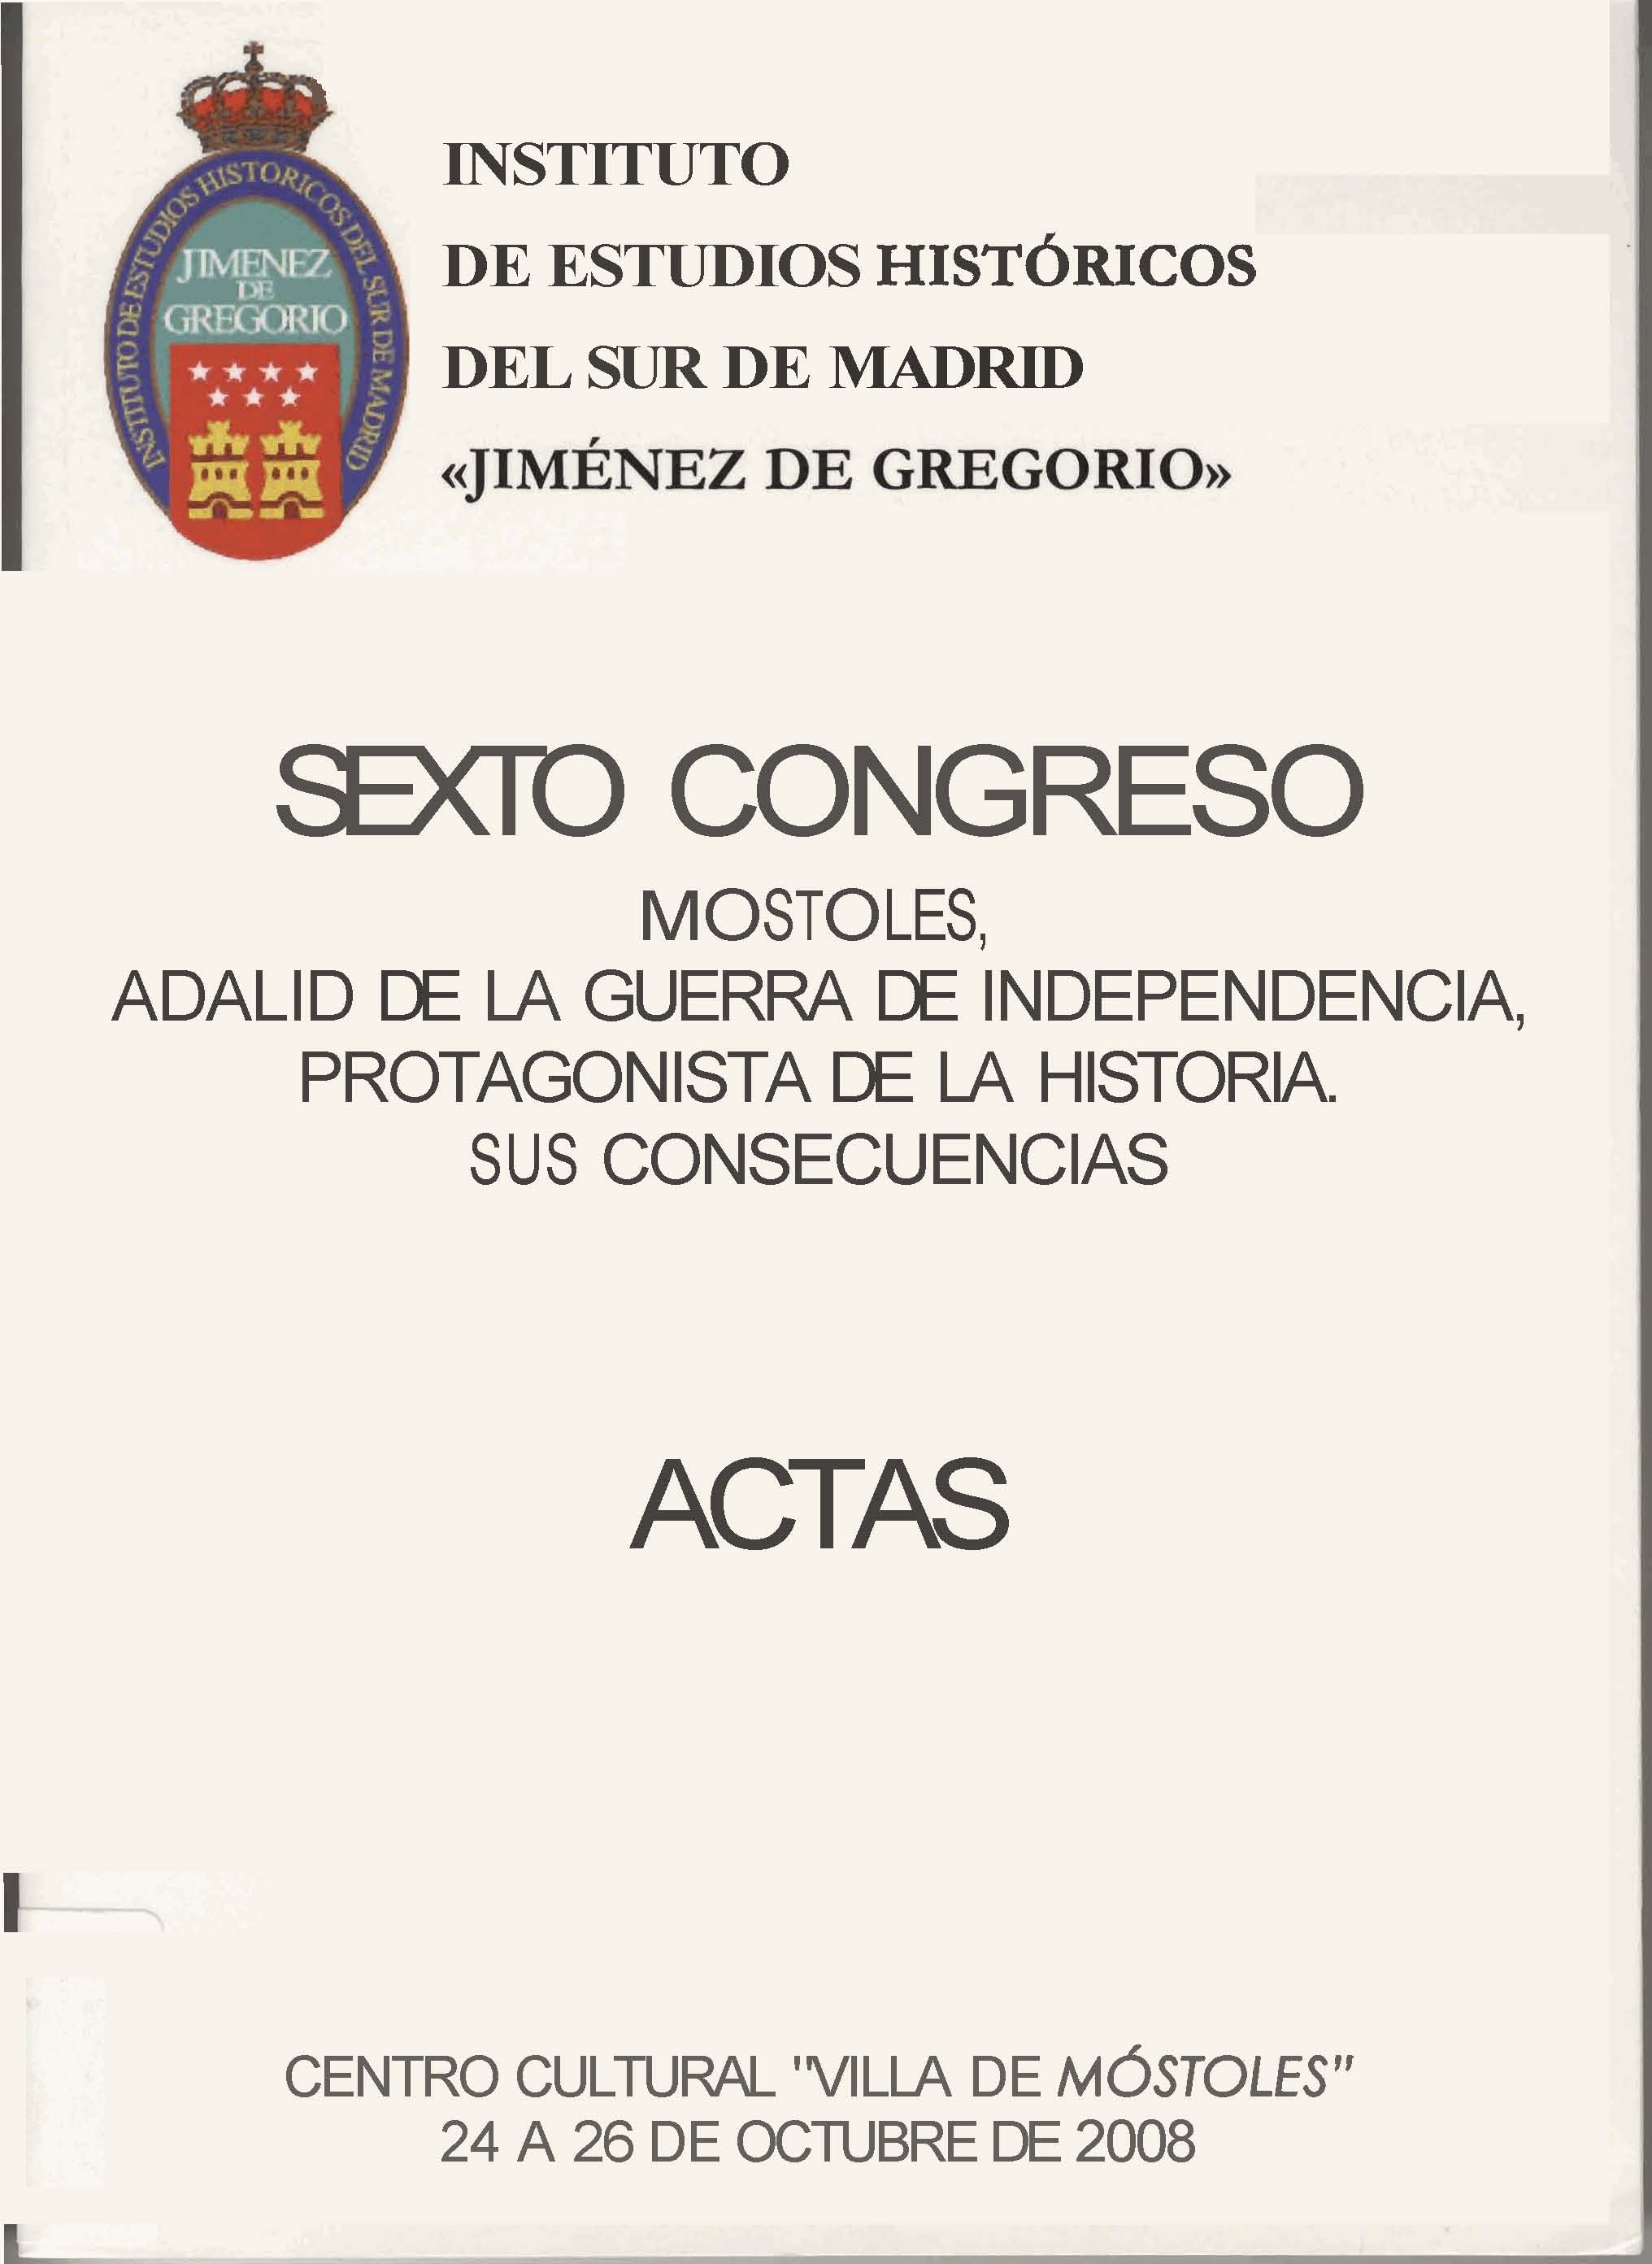 Imagen de portada del libro Sexto Congreso del Instituto de estudios históricos del sur de Madrid "Jiménes de Gregorio"